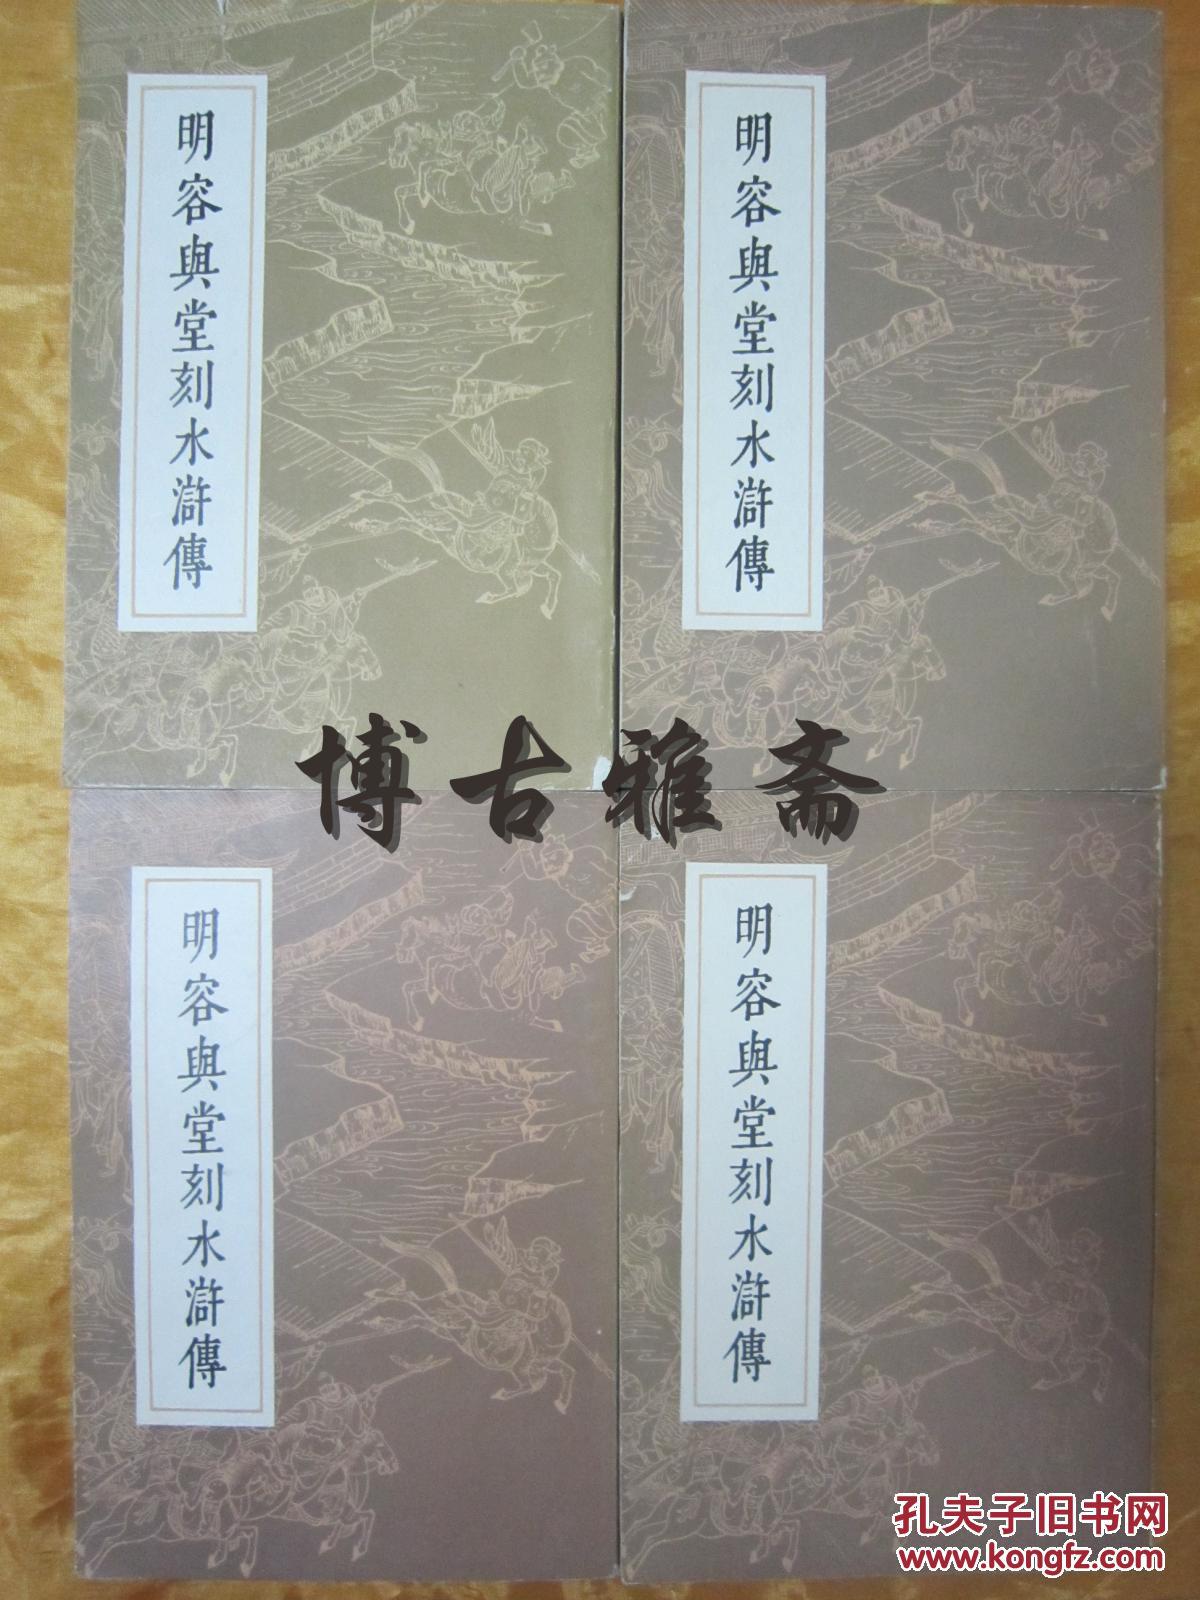 《明容与堂刻水浒传》一套四厚册全,上海人民